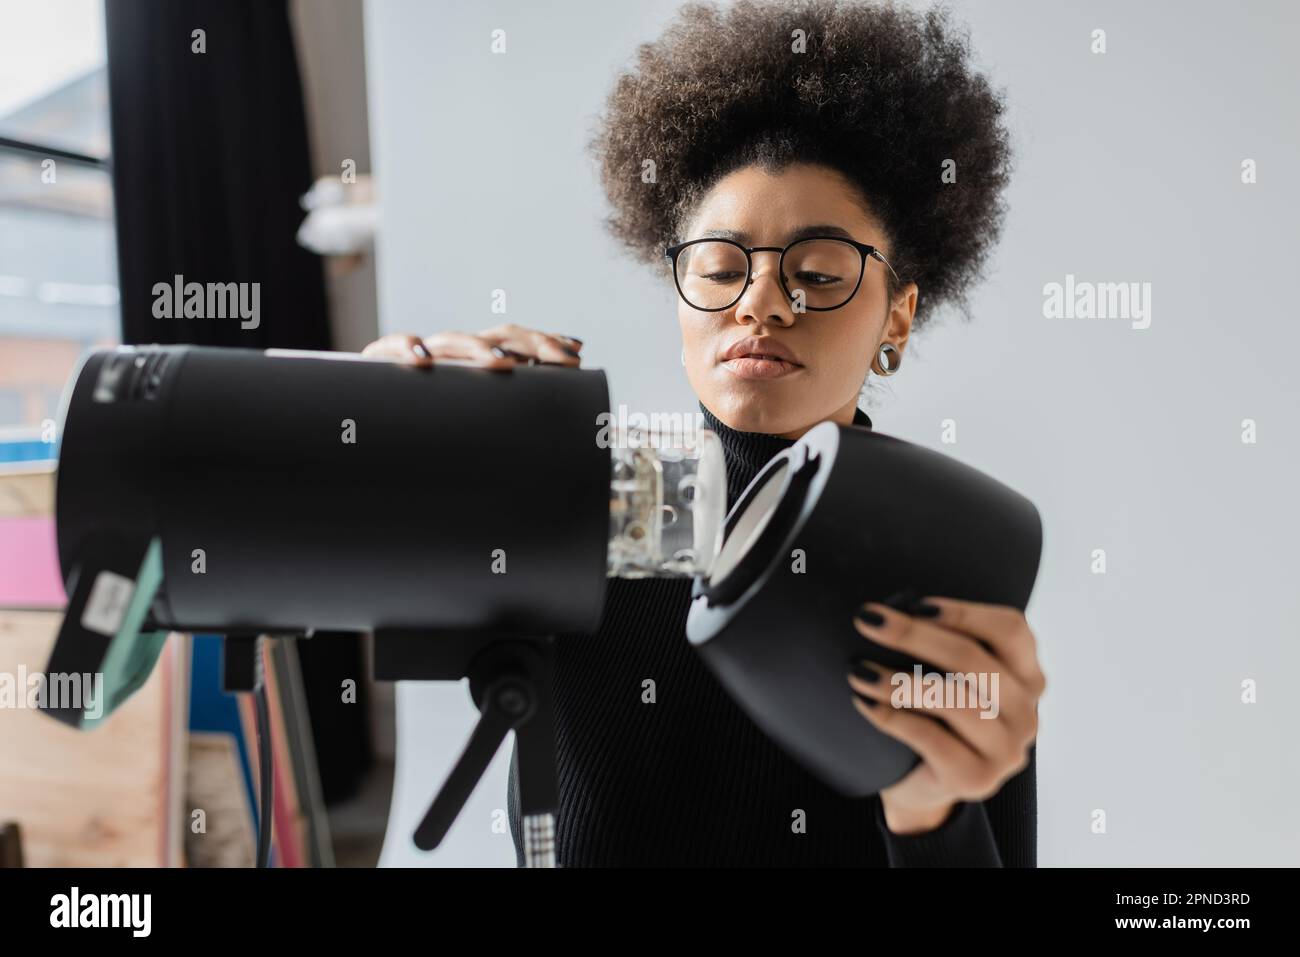 african american content maker in occhiali montaggio strobe riflettori in studio fotografico, immagine stock Foto Stock